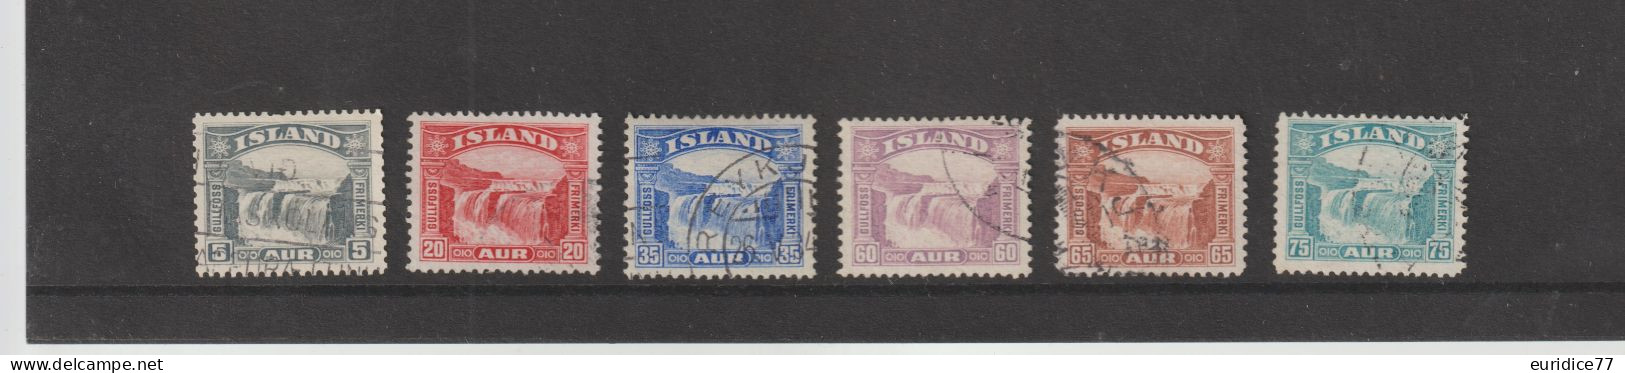 Islande 1931-32 - Yvert 139/44 Oblitere Cote 45€ - Gebraucht